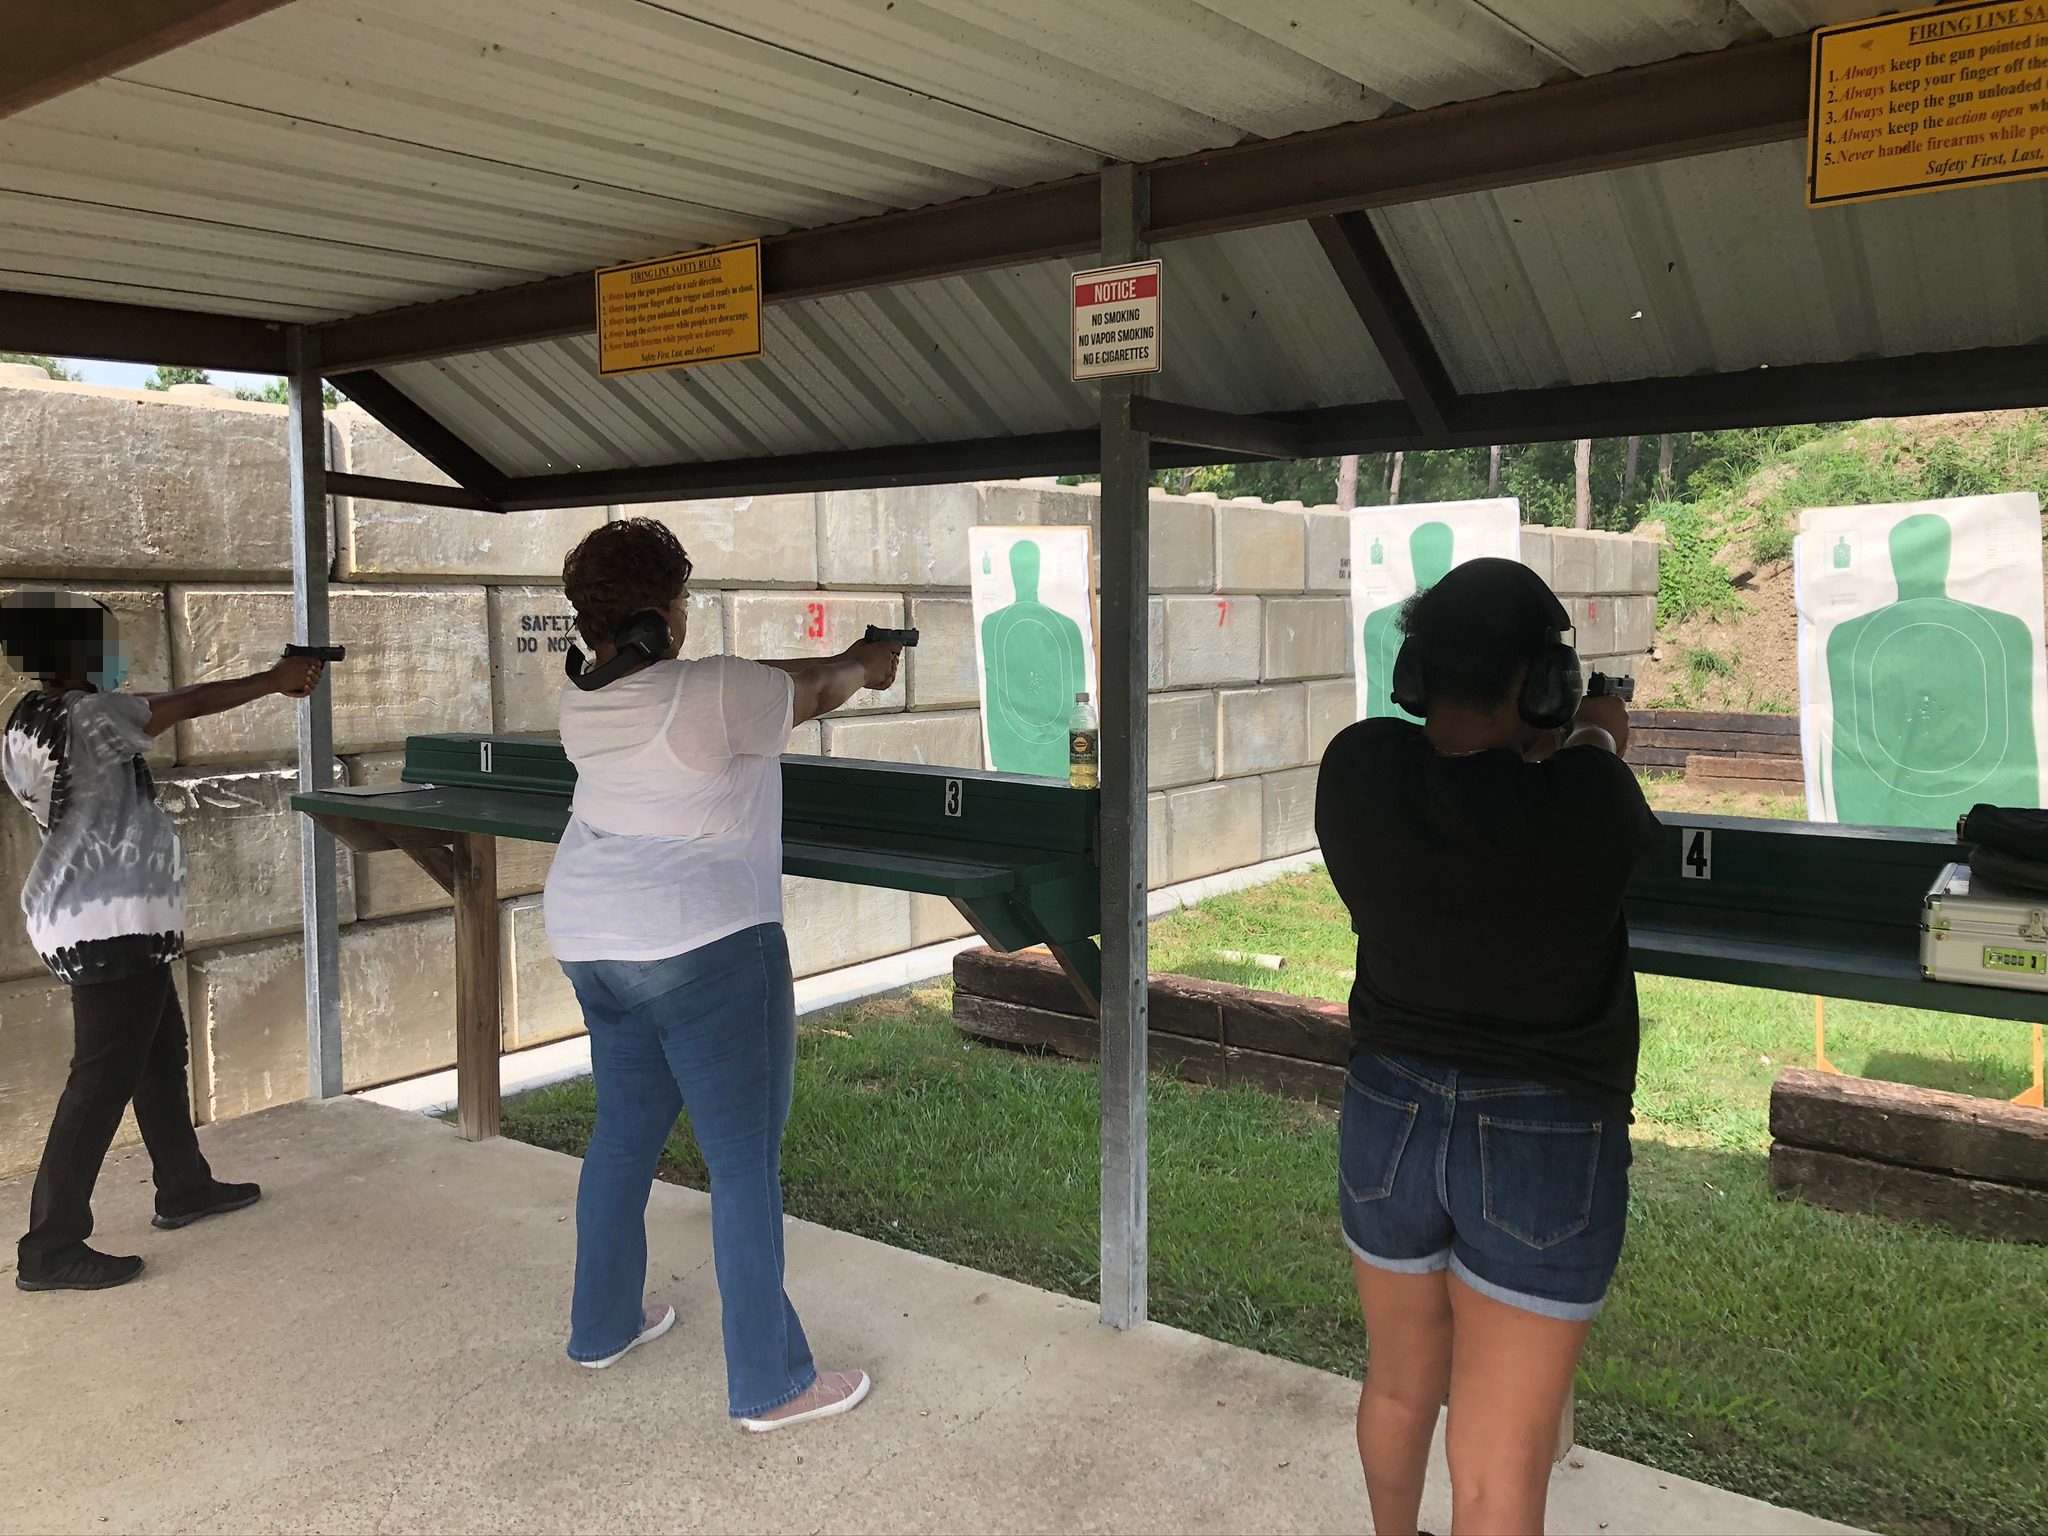 Three women at a shooting range aiming guns at targets